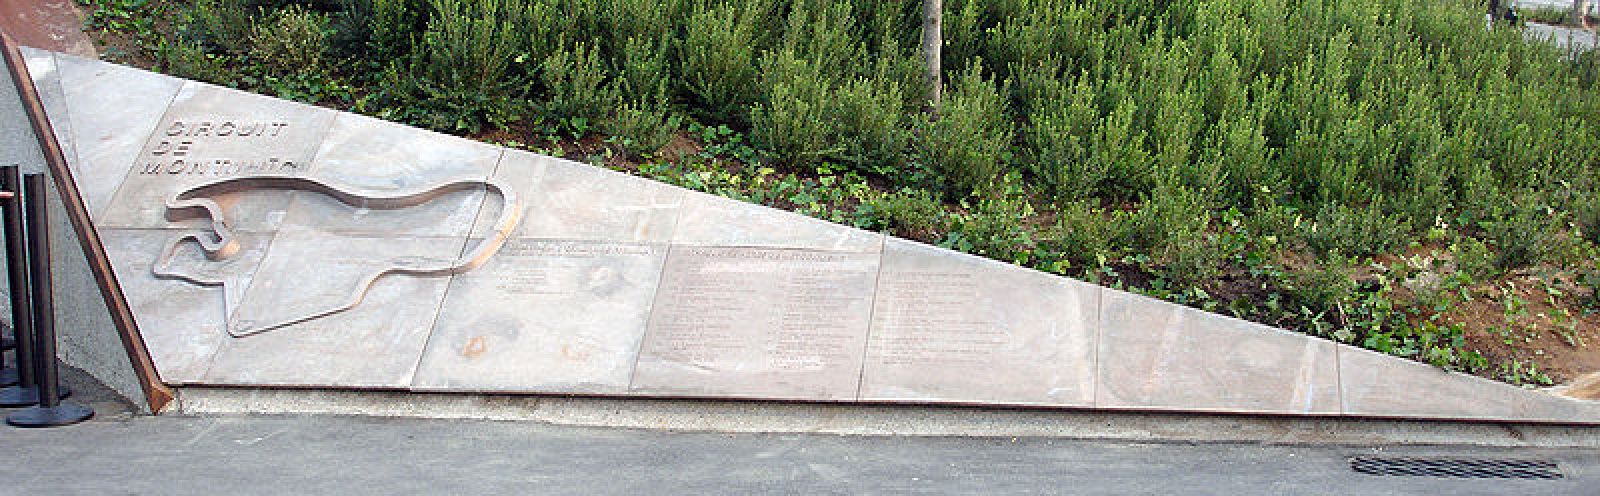 Imagen del monumento que recuerda el circuito barcelonés de Montjuic.